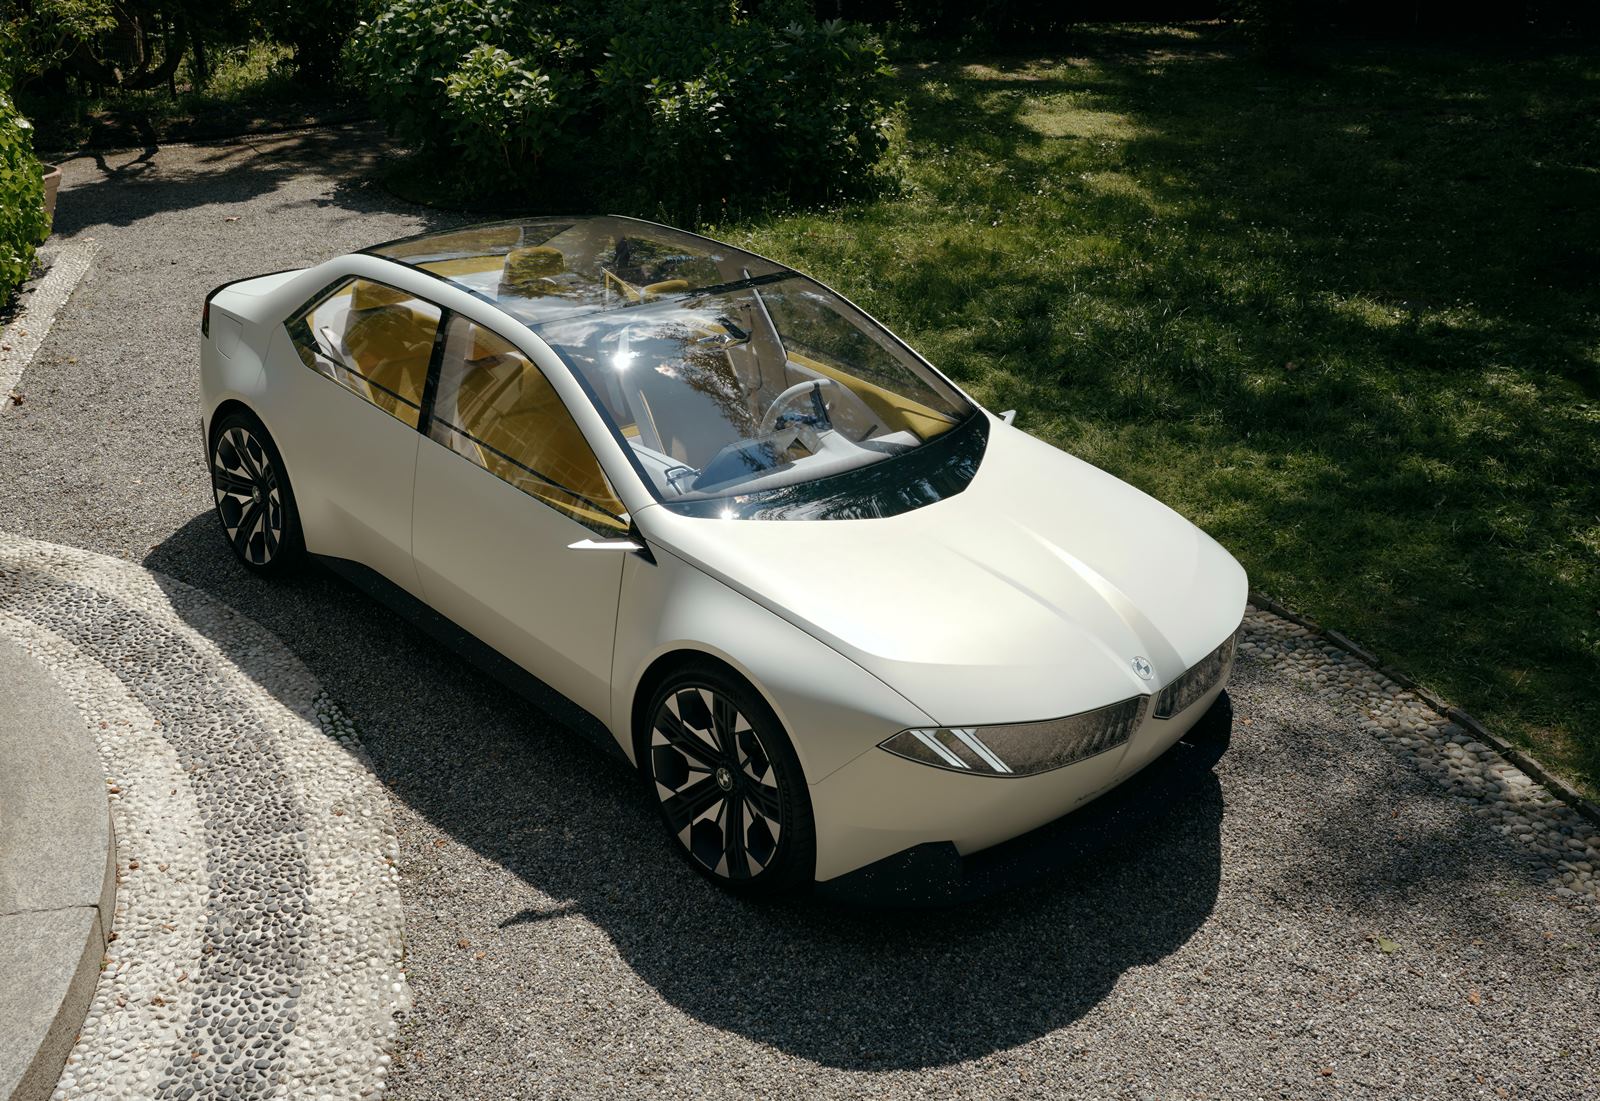 2023 BMW Vision Neue Klasse concept EV